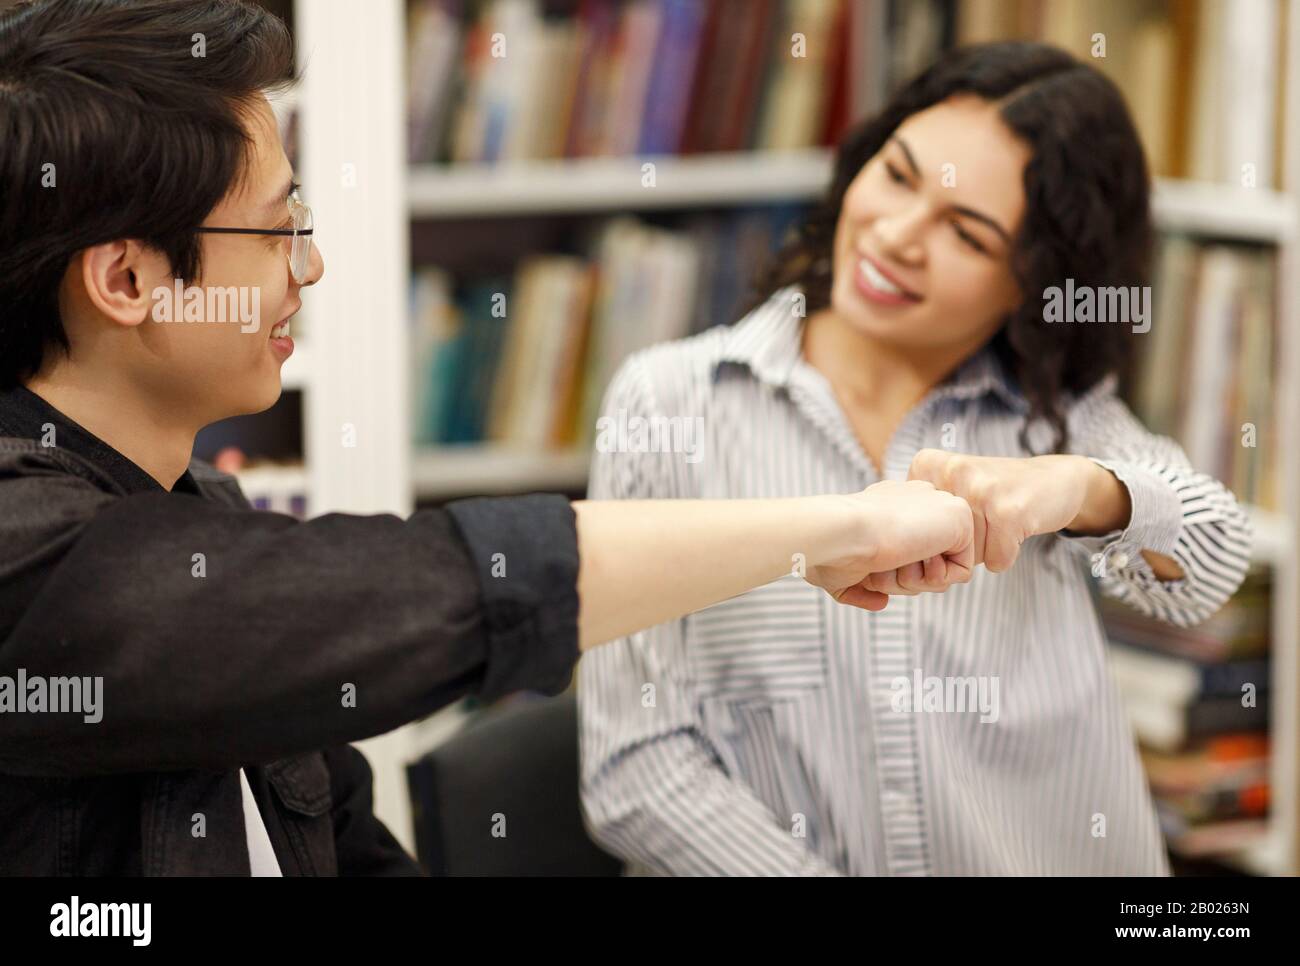 Un couple joyeux fait un geste faste dans la bibliothèque Banque D'Images